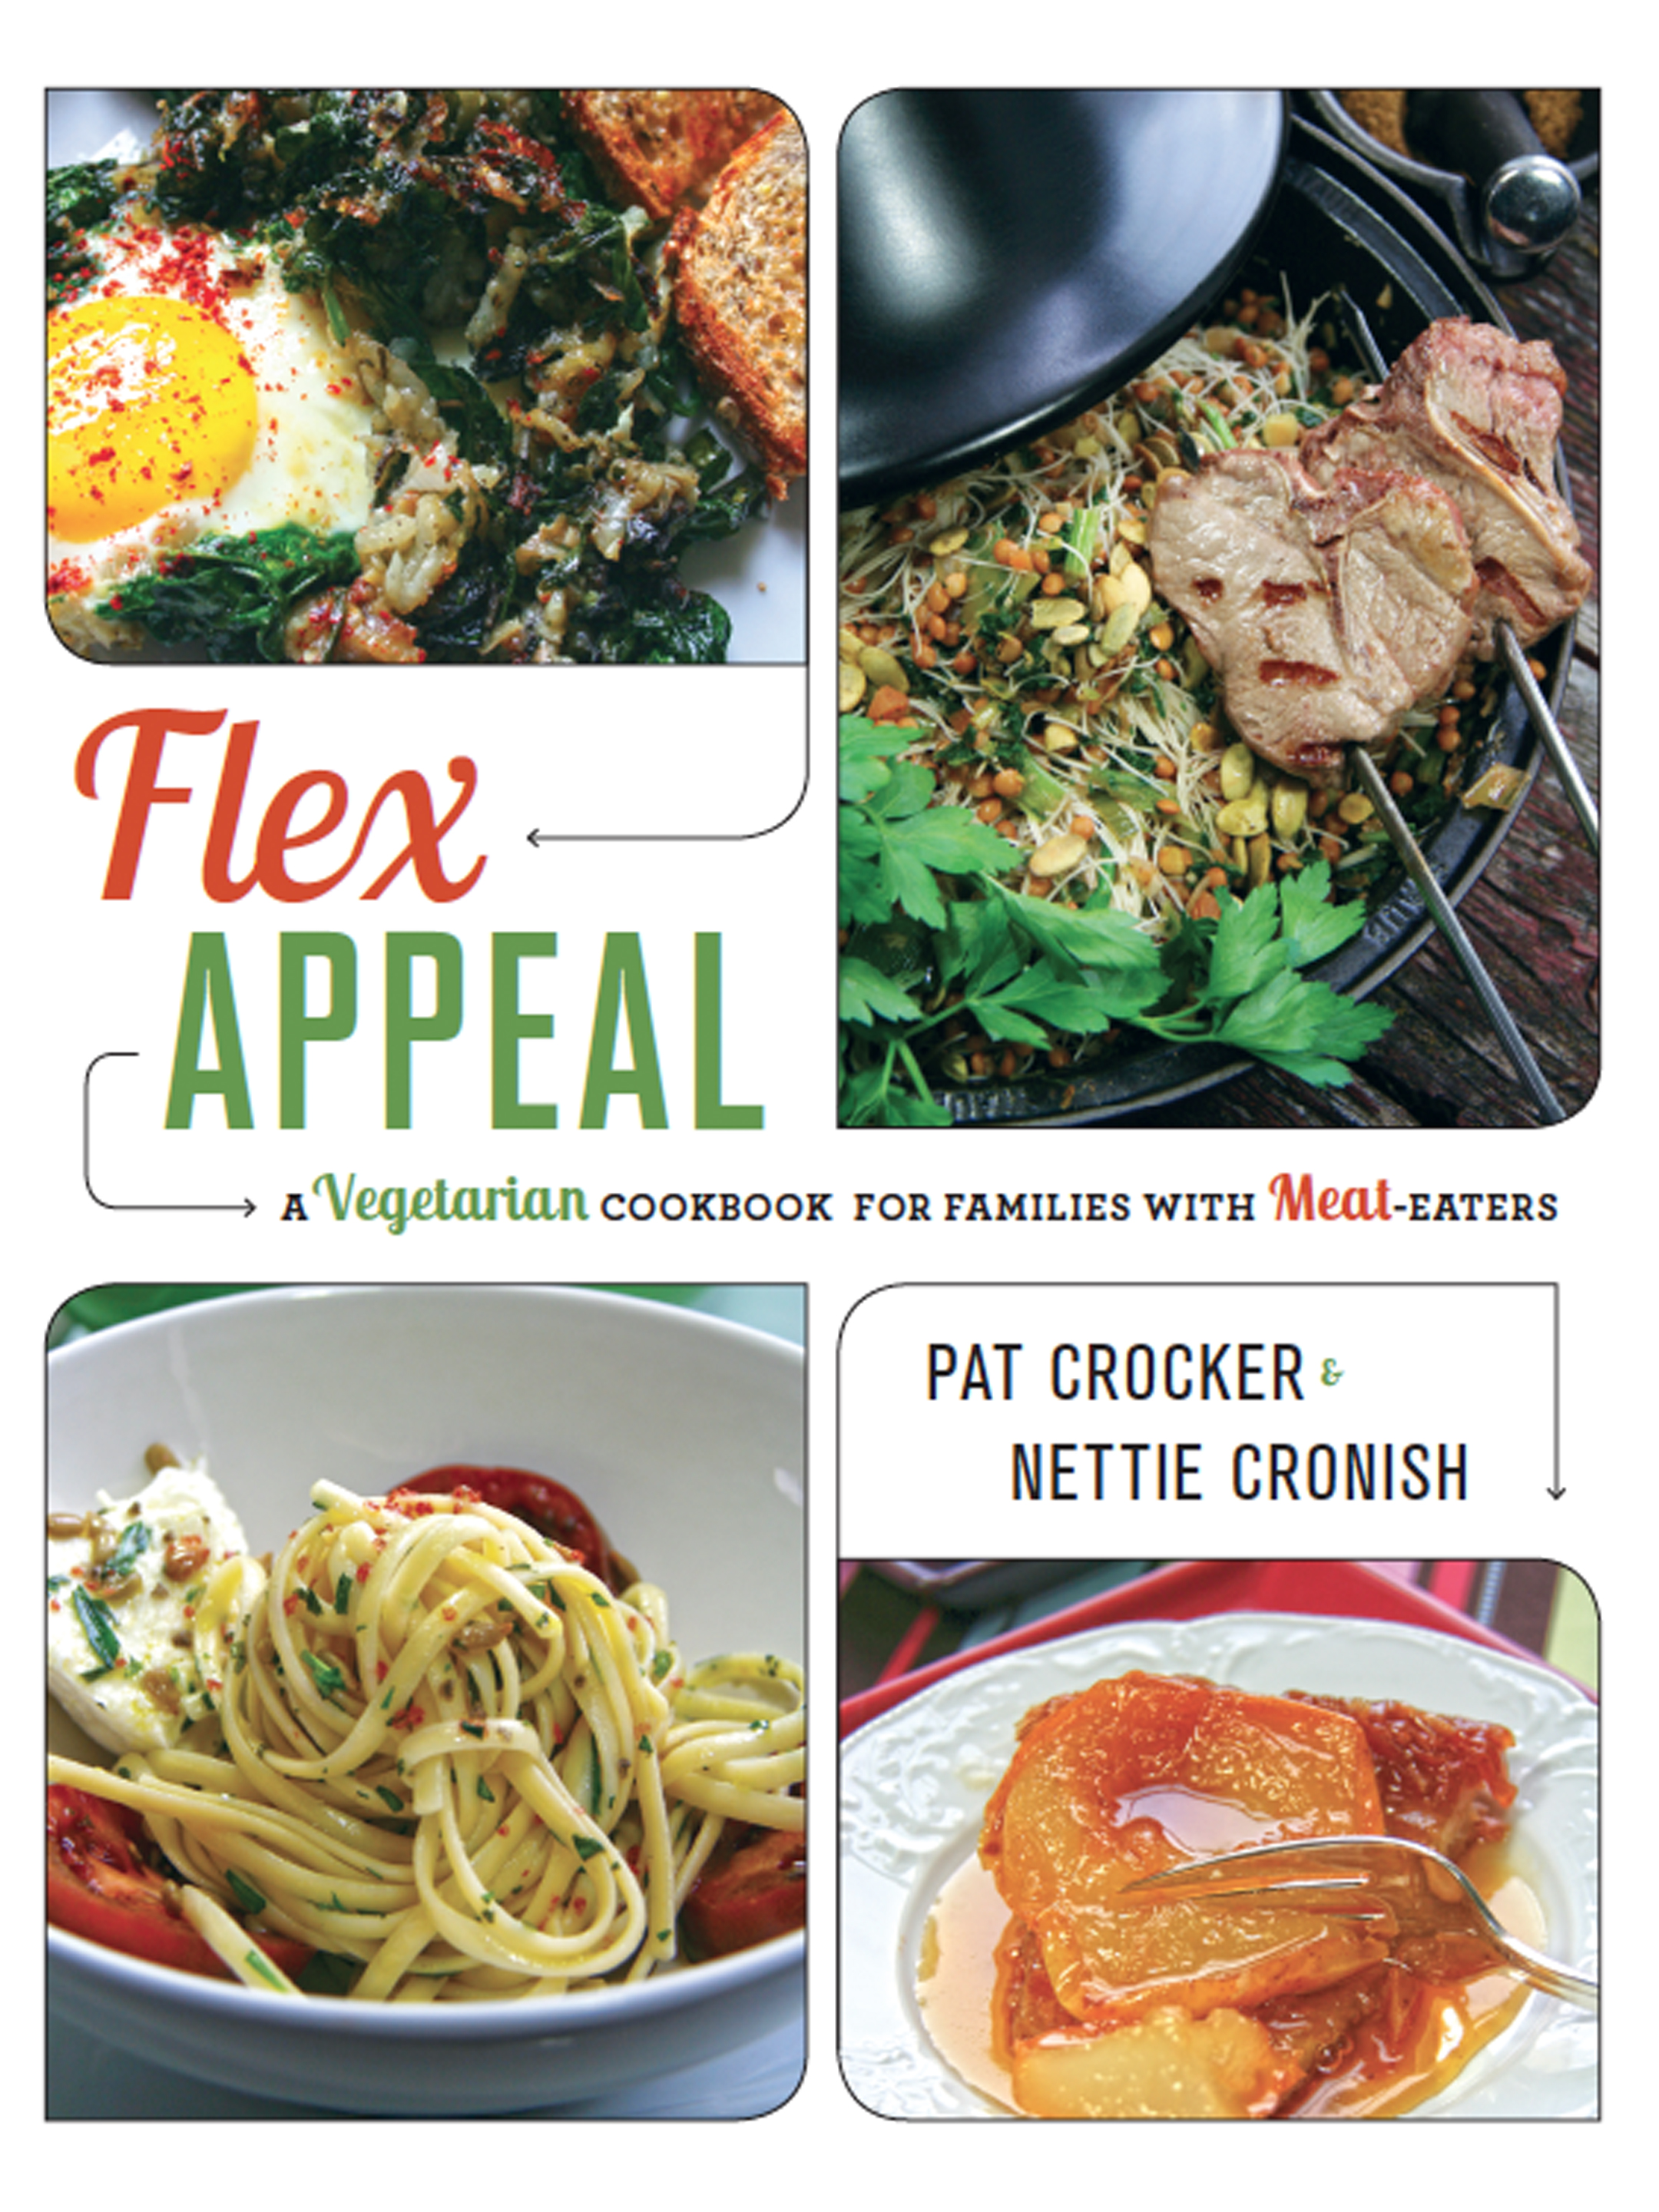 Flex Appeal by Pat Crocker